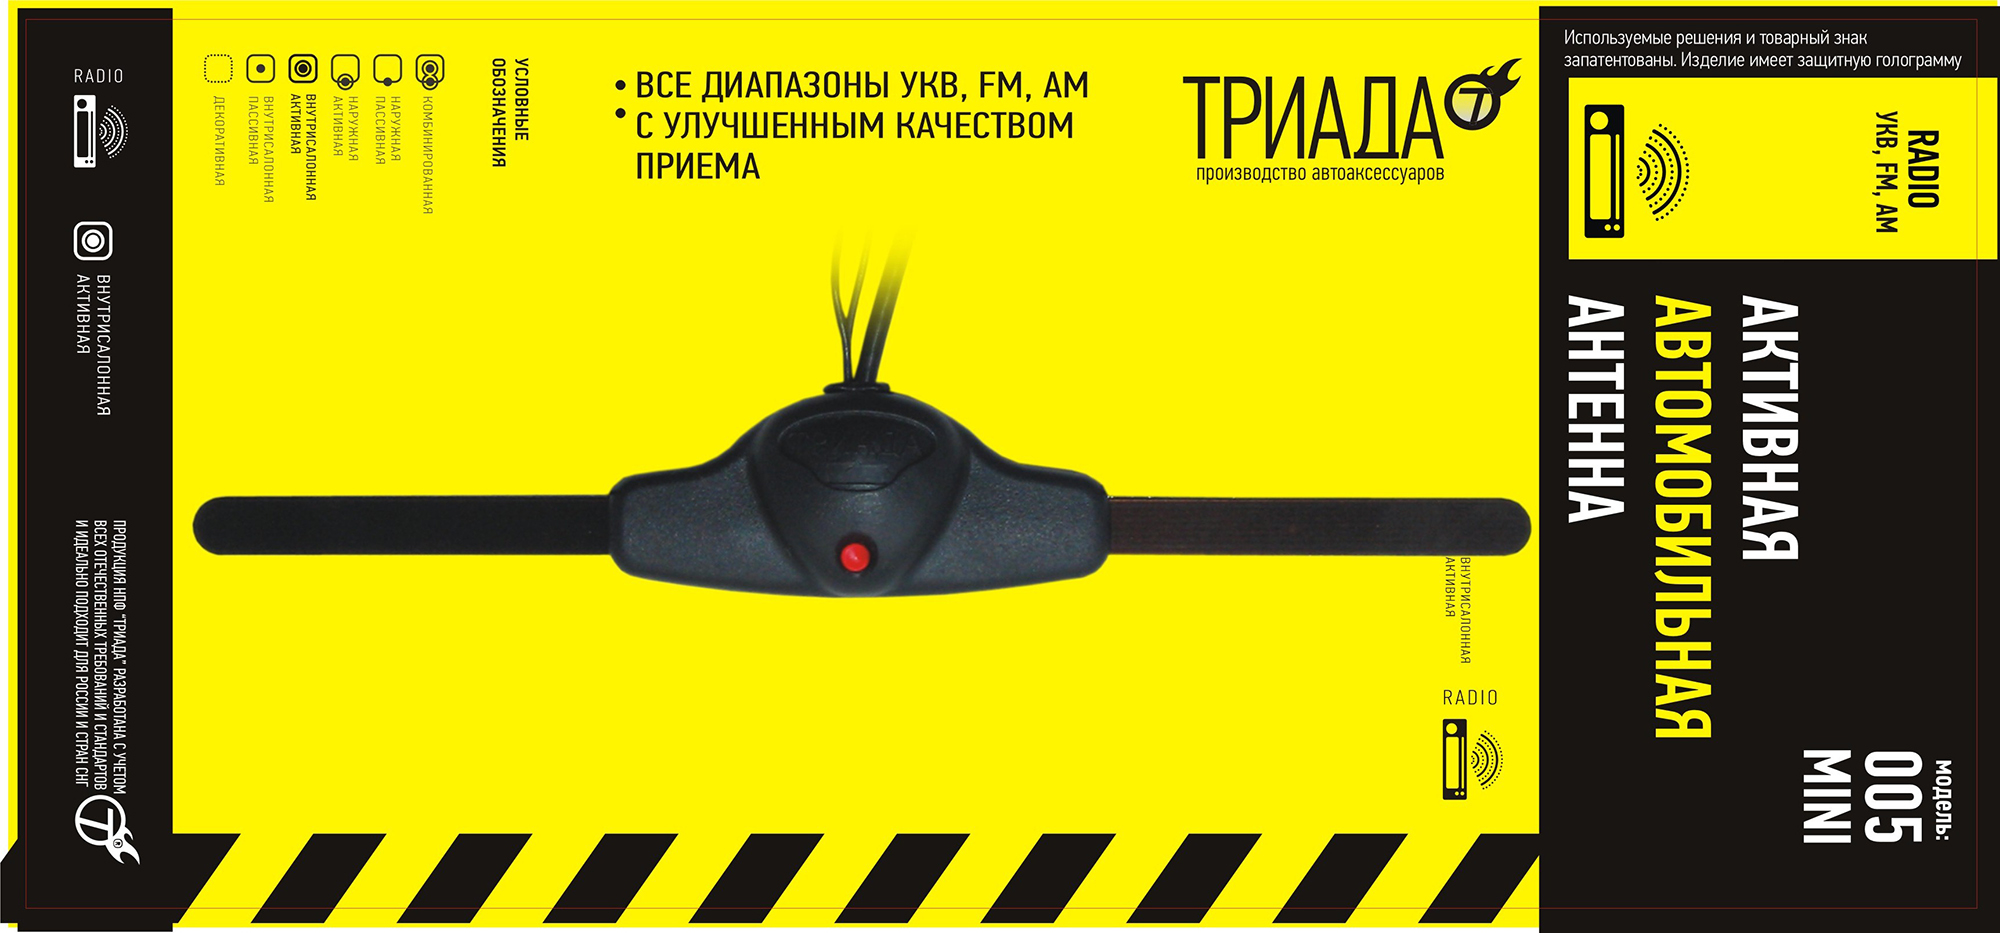 Антенна FM Триада-005 Mini активная